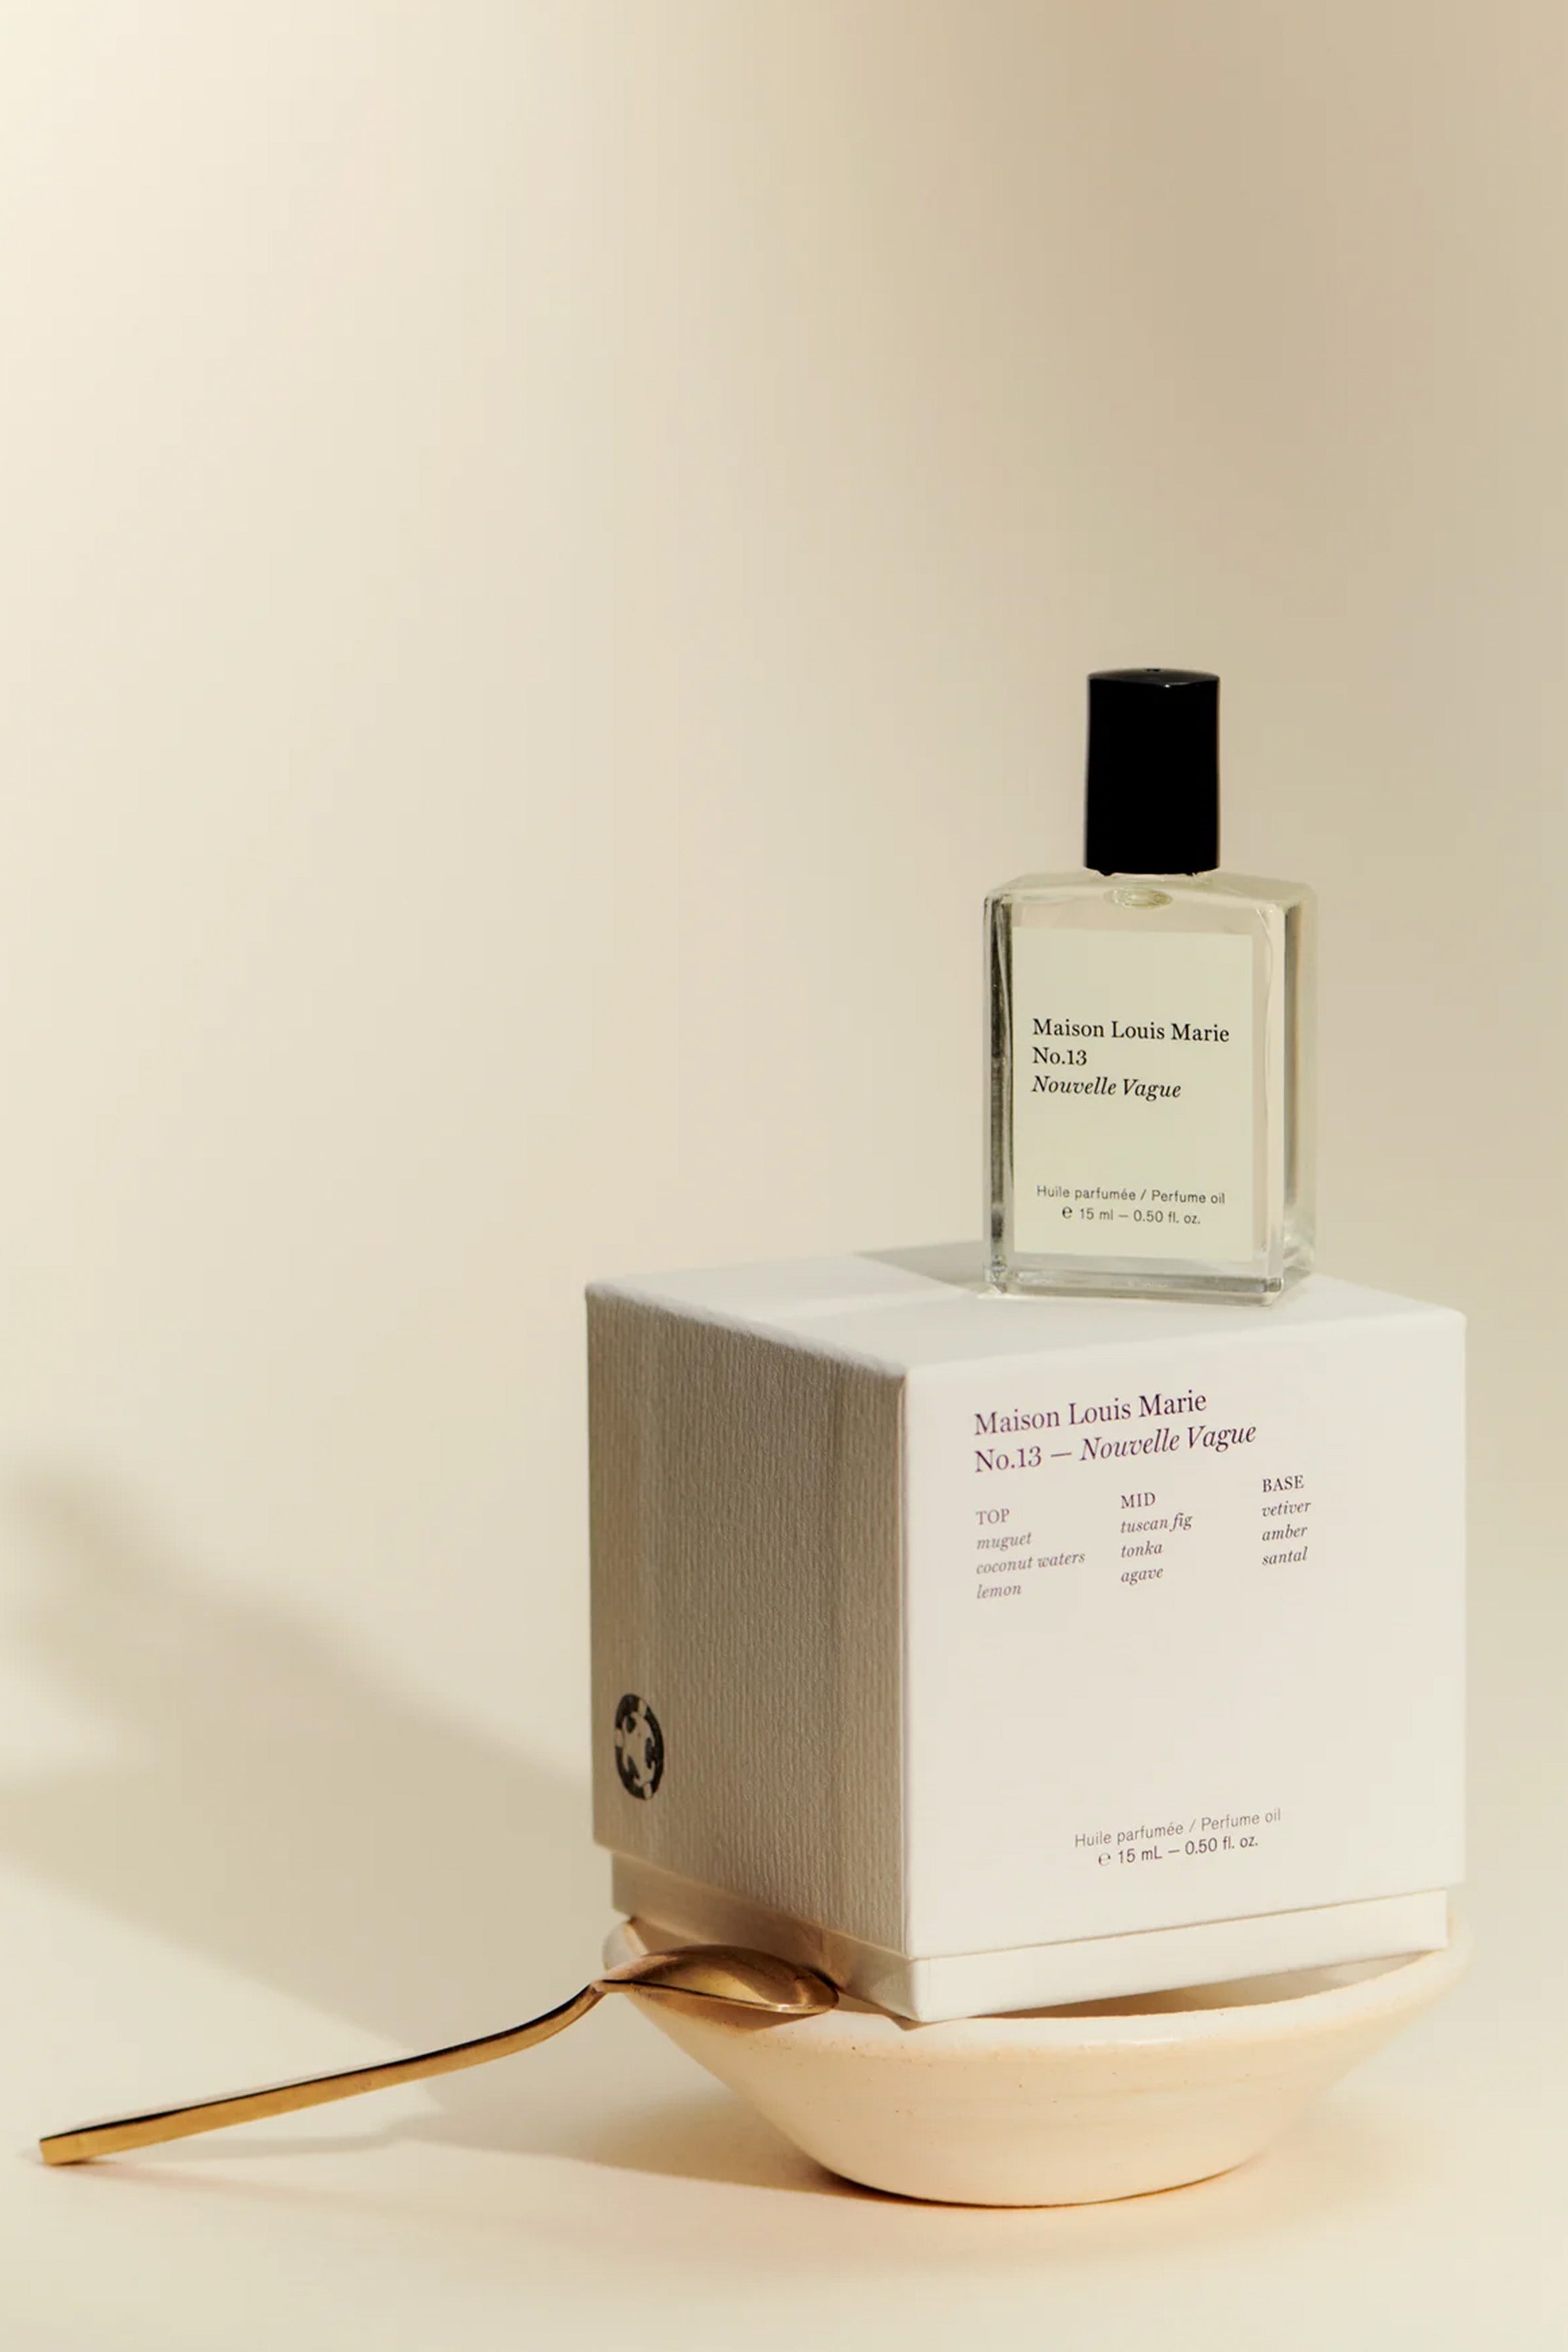 No.13 Nouvelle Vague Perfume Oil - Maison Louis Marie